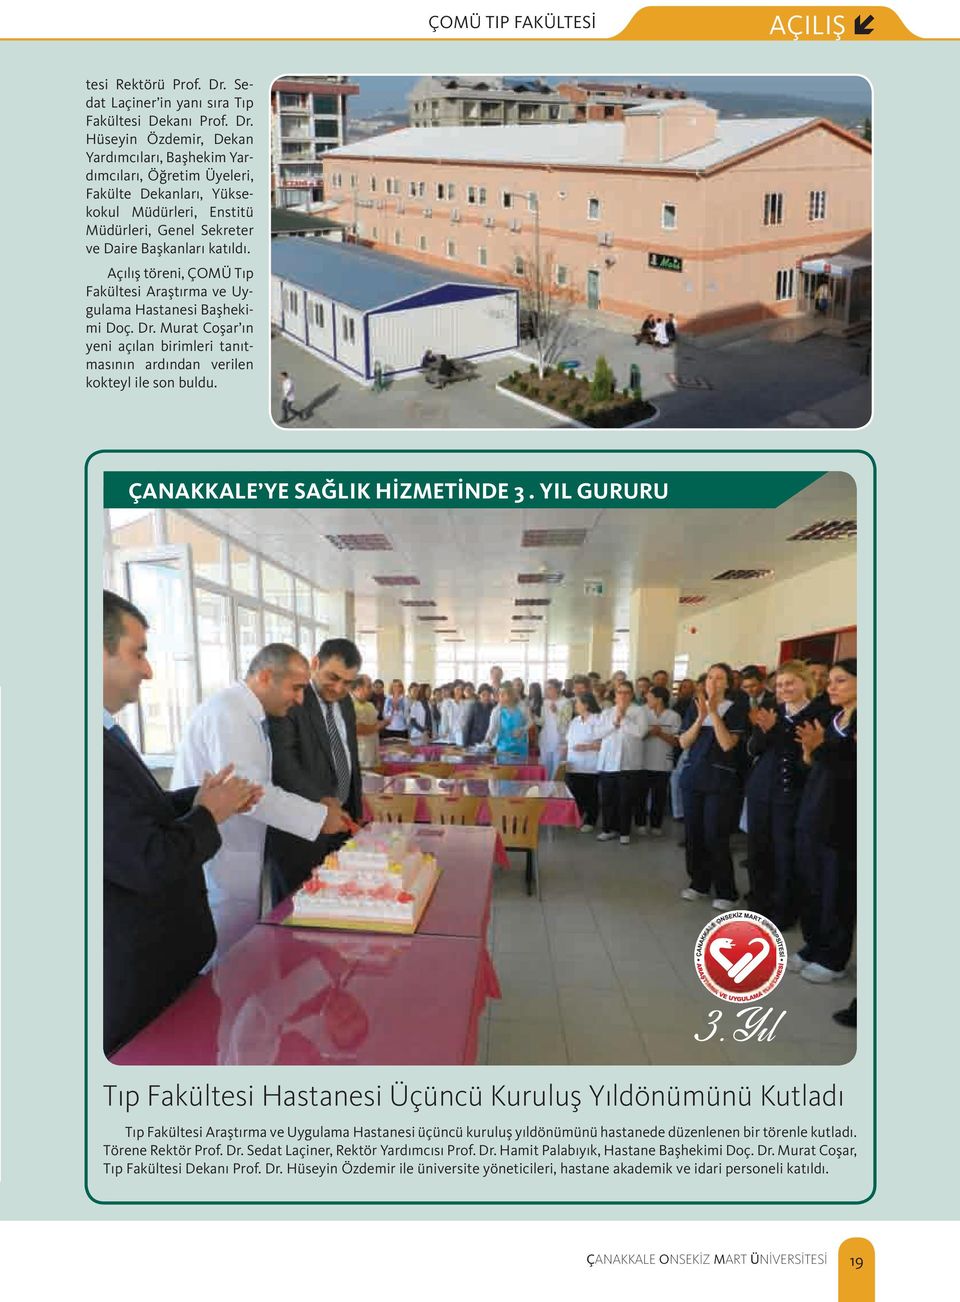 Hüseyin Özdemir, Dekan Yardımcıları, Başhekim Yardımcıları, Öğretim Üyeleri, Fakülte Dekanları, Yüksekokul Müdürleri, Enstitü Müdürleri, Genel Sekreter ve Daire Başkanları katıldı.